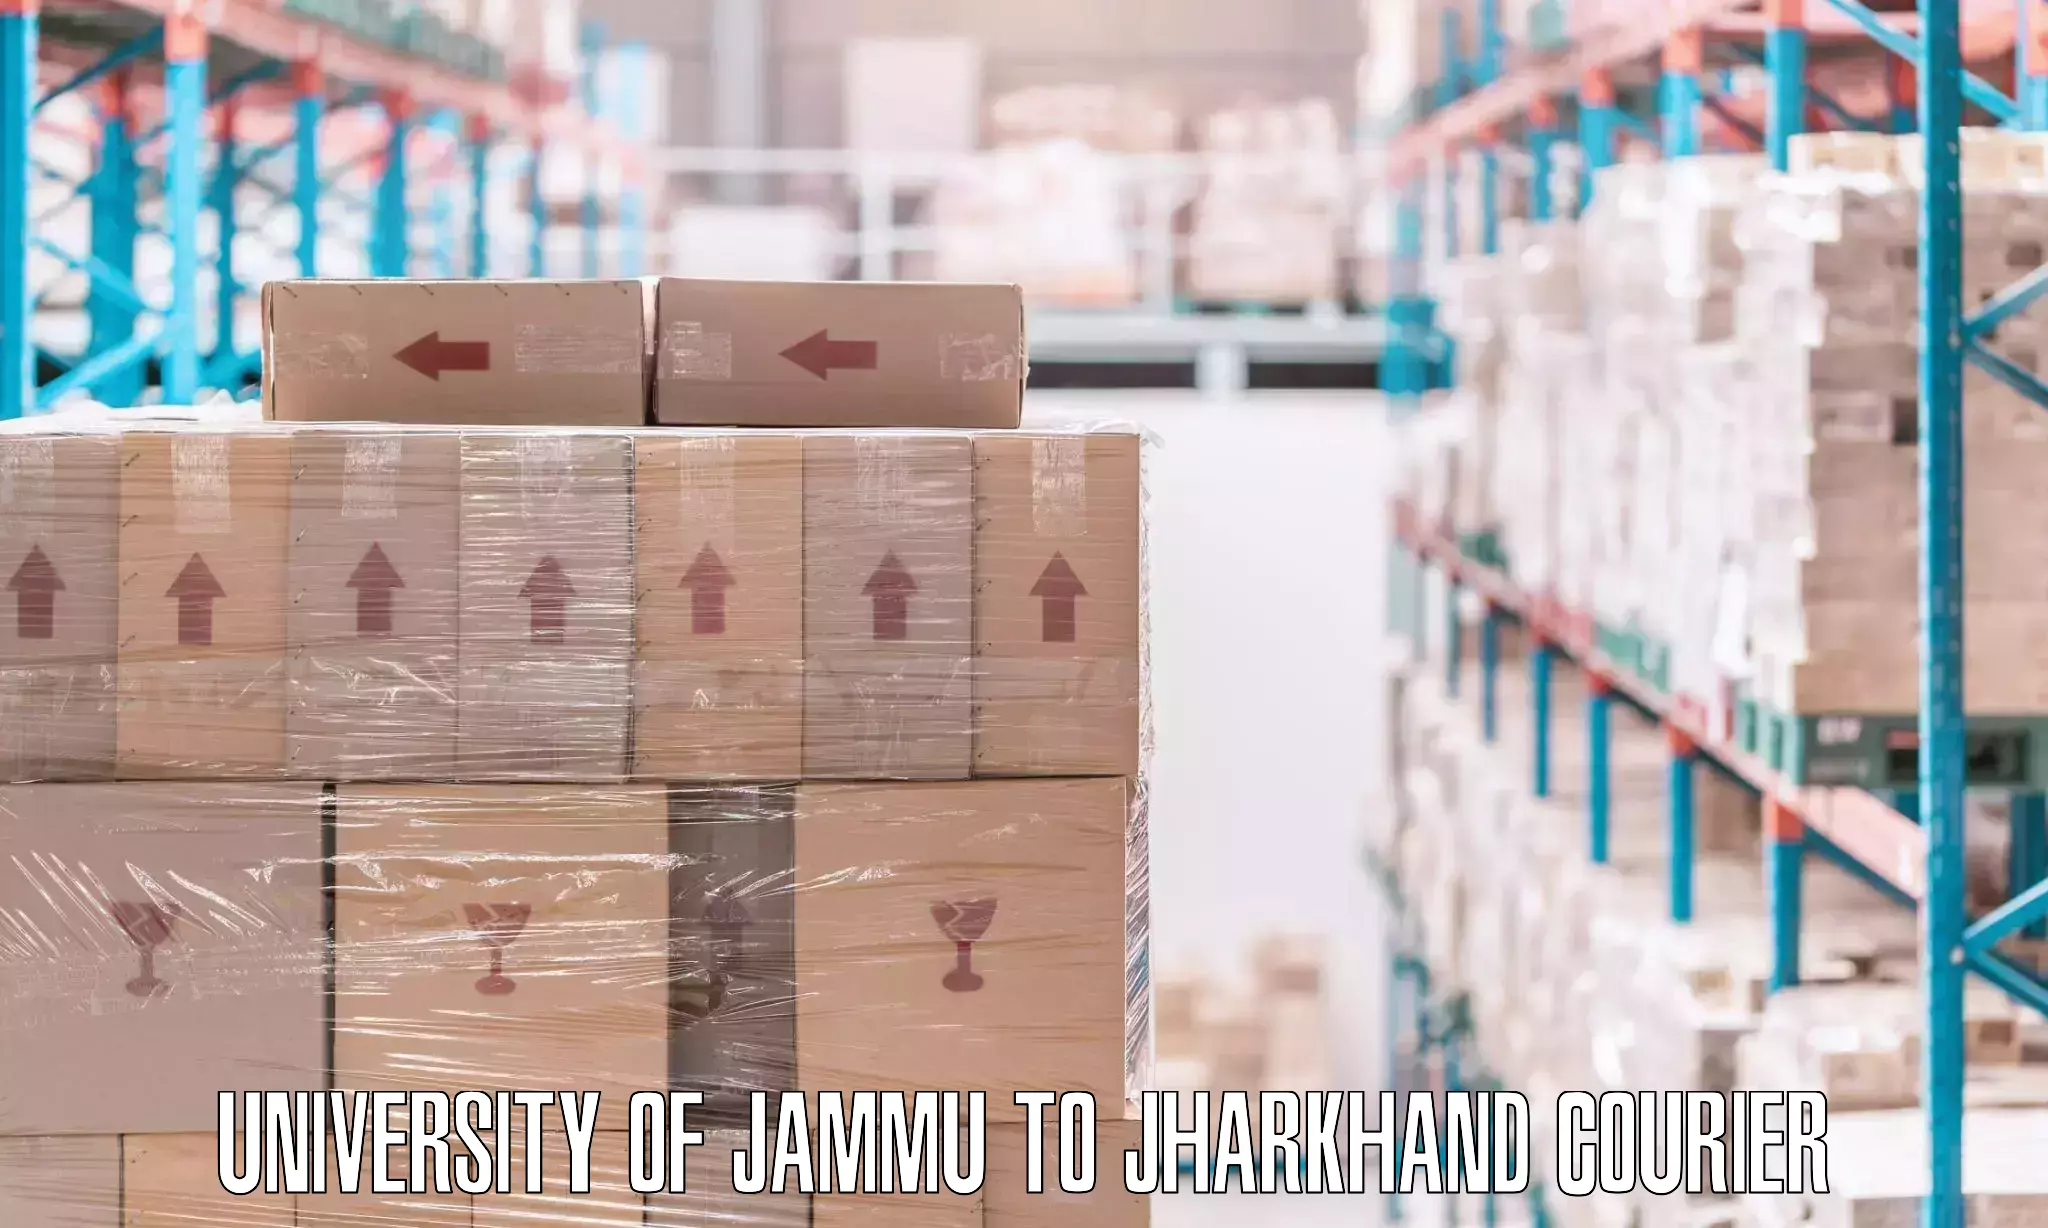 Professional packing services University of Jammu to Palamu